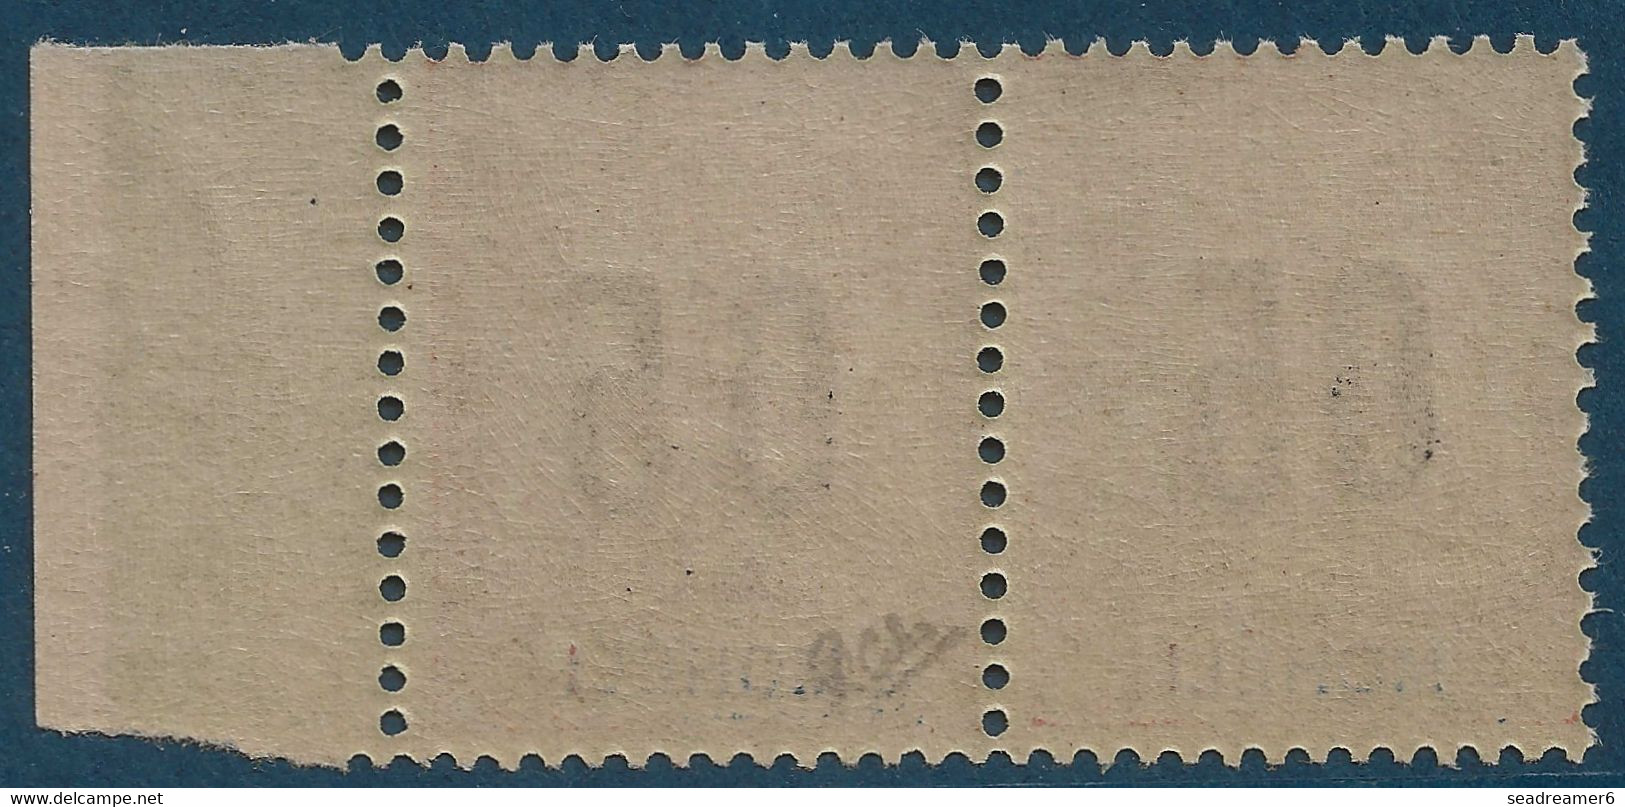 Colonies Type Groupe Mohéli  Paire BDFeuille N°18Aa** Variété 0 & 5 Espacés Tenant à Normal Signé Calves - Unused Stamps